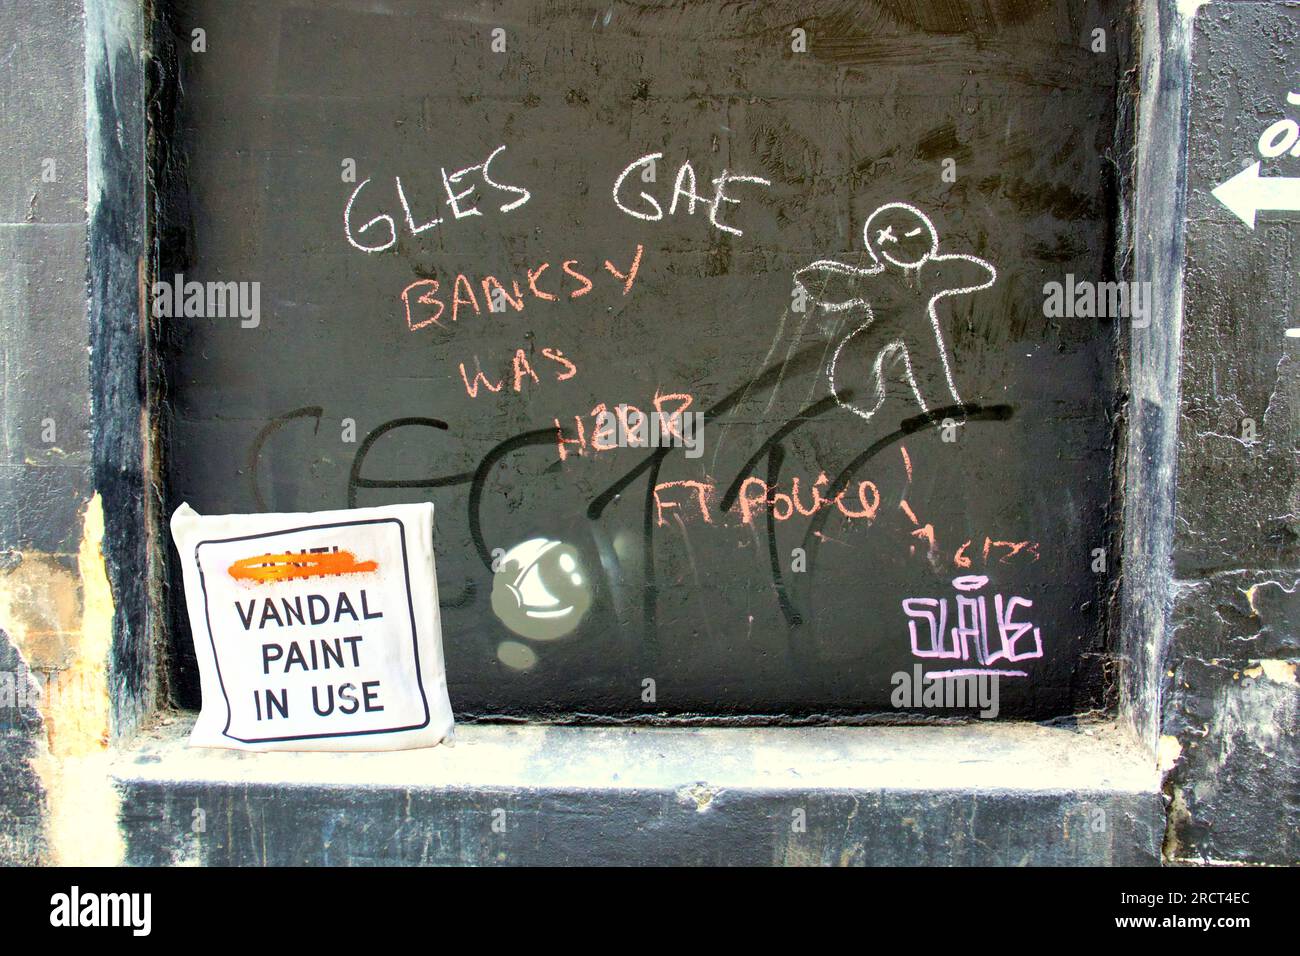 Glasgow, Schottland, Vereinigtes Königreich 16. Juli 2023. In Glasgow wird "New Banksy" oder "Wanksy" genannt, da ihre Authentizität an derselben Stelle in Frage gestellt wird wie jene, die vor einigen Wochen eine solche Kontroverse ausgelöst hat, eine Schablone zwischen den Postratten-Graffiti in der Nähe der aktuellen Ausstellung von Cut and Run. Credit Gerard Ferry/Alamy Live News Stockfoto